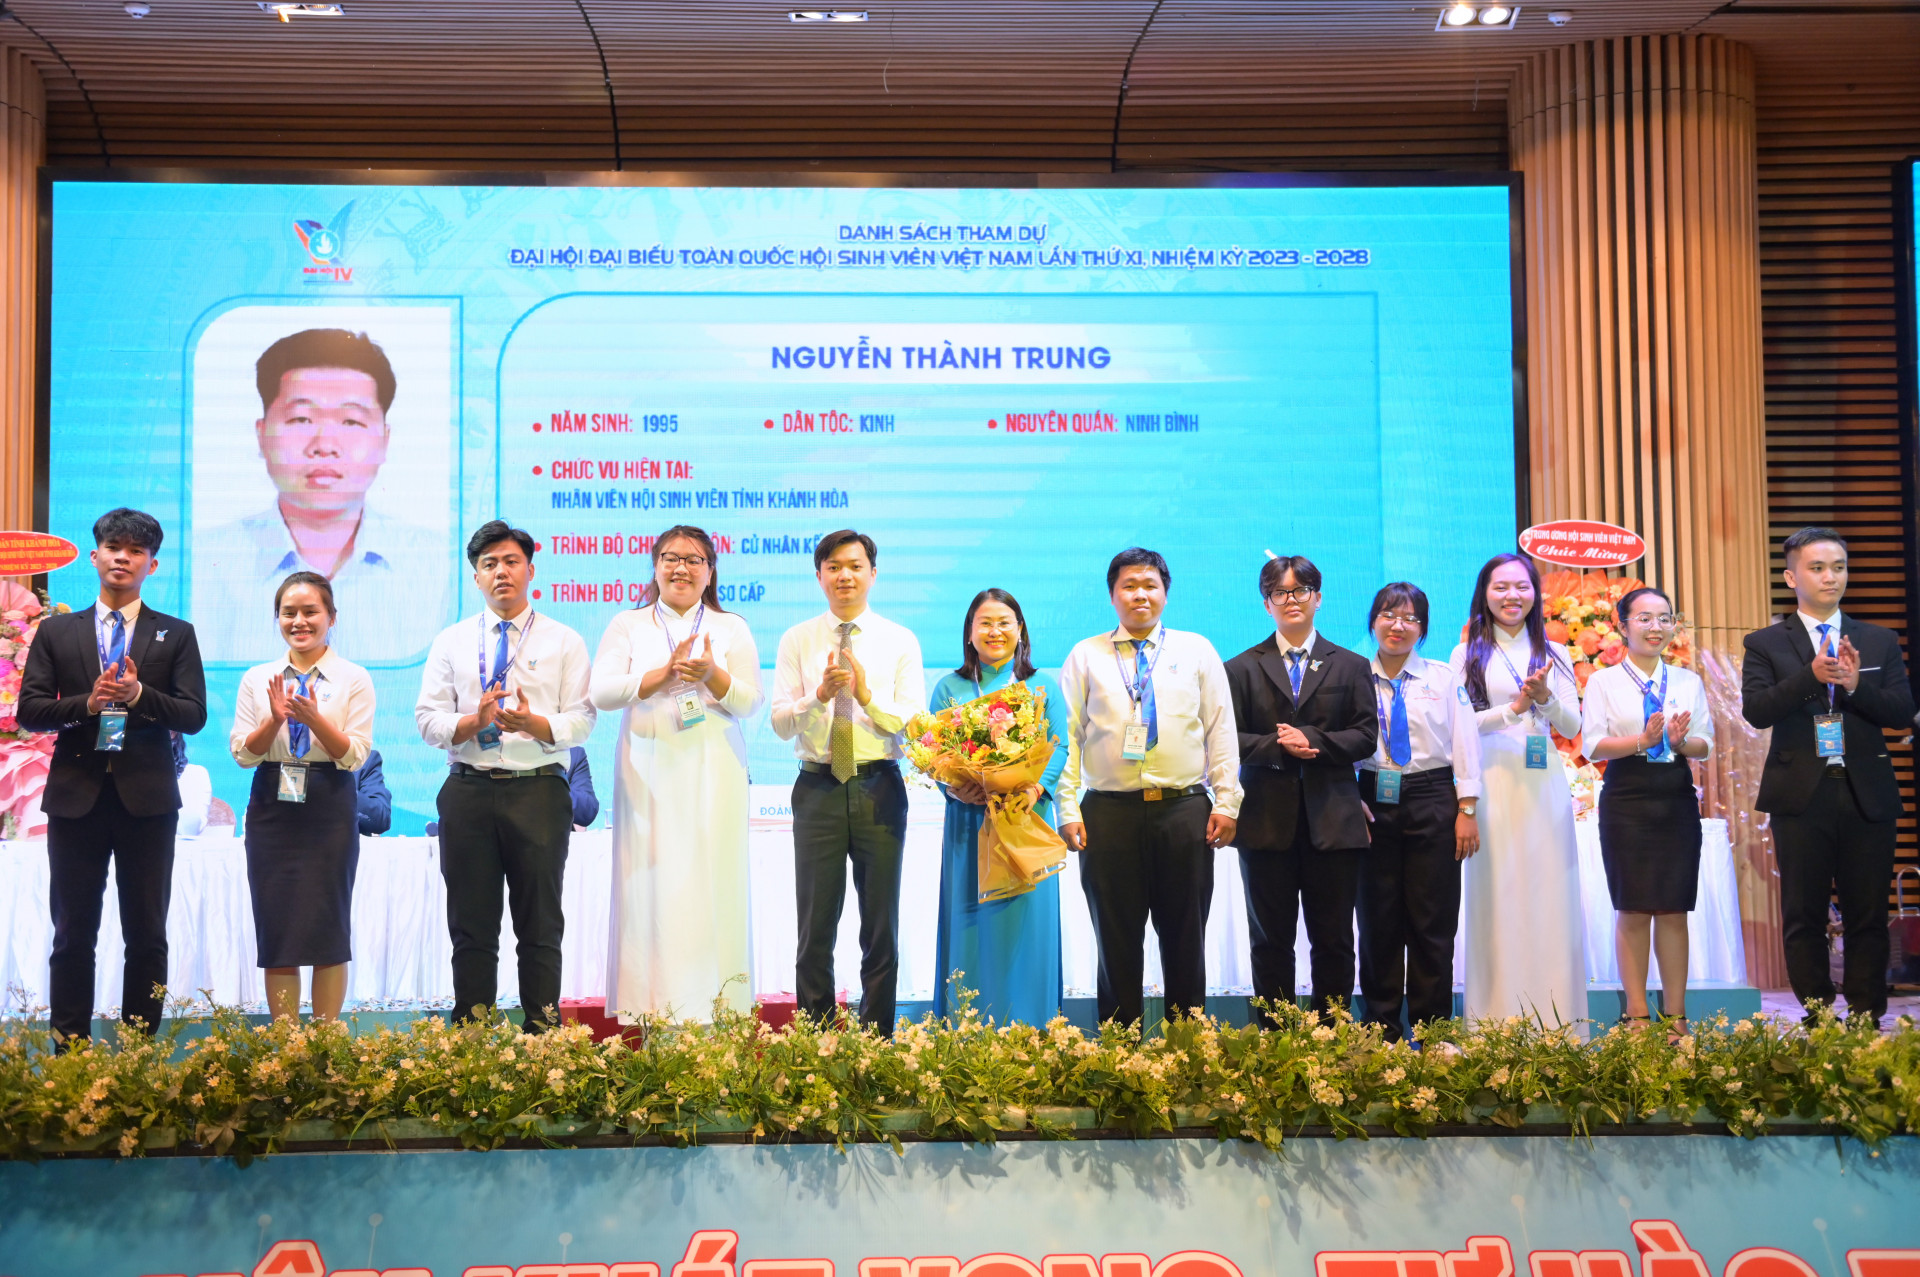 Chủ tịch Hội Sinh Viên Việt Nam tặng hoa chúc mừng đoàn đại biểu Hội Sinh viên Việt Nam tỉnh Khánh Hoà dự Đại hội đại biểu toàn quốc Hội Sinh viên Việt Nam lần thứ XI.